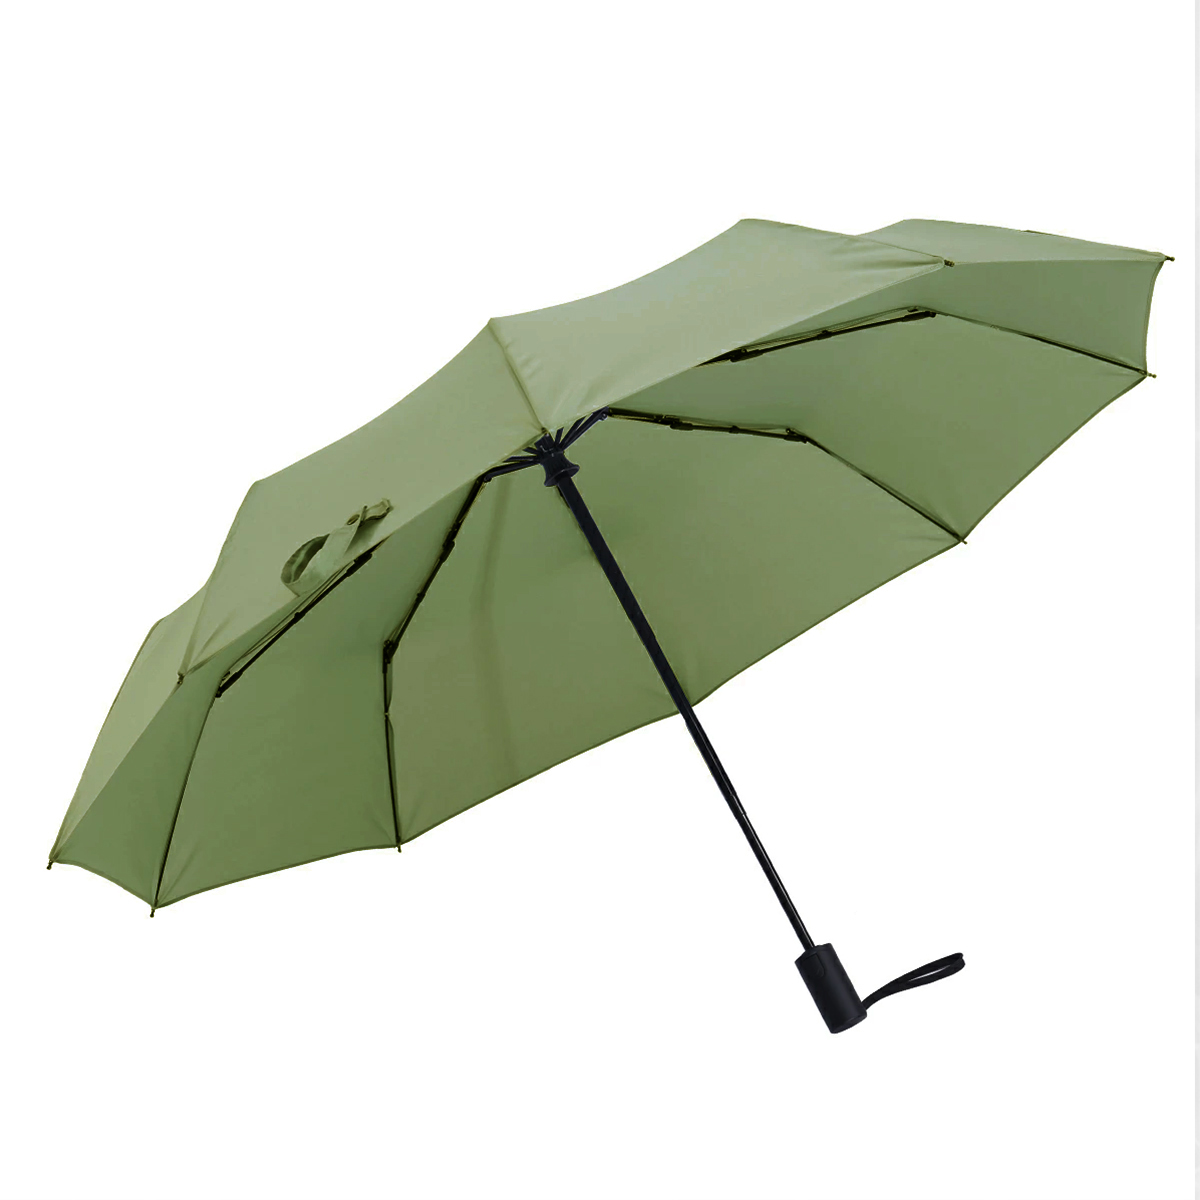 折りたたみ傘 メンズ ワンタッチ 自動開閉 日本特許 逆戻り防止 大きい 超撥水 耐風傘 頑丈 メンズ傘 男性 風に強い 梅雨対策 プレゼント